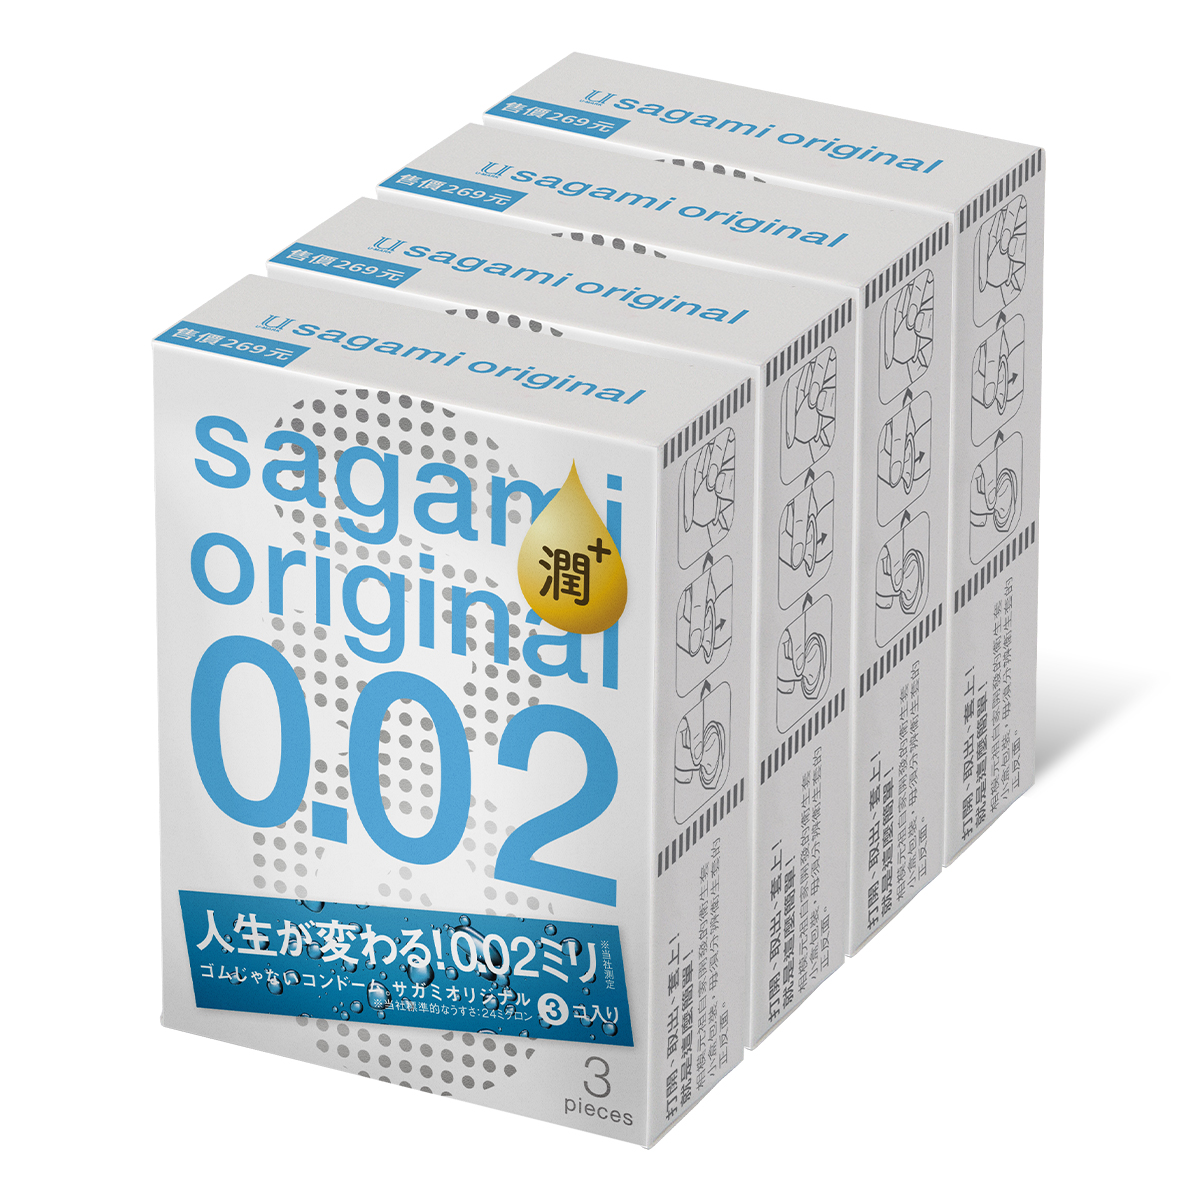 Sagami Original 0.02 Extra Lubricated 3's Pack PU Condom x 4 packs (Short Expiry)-p_1